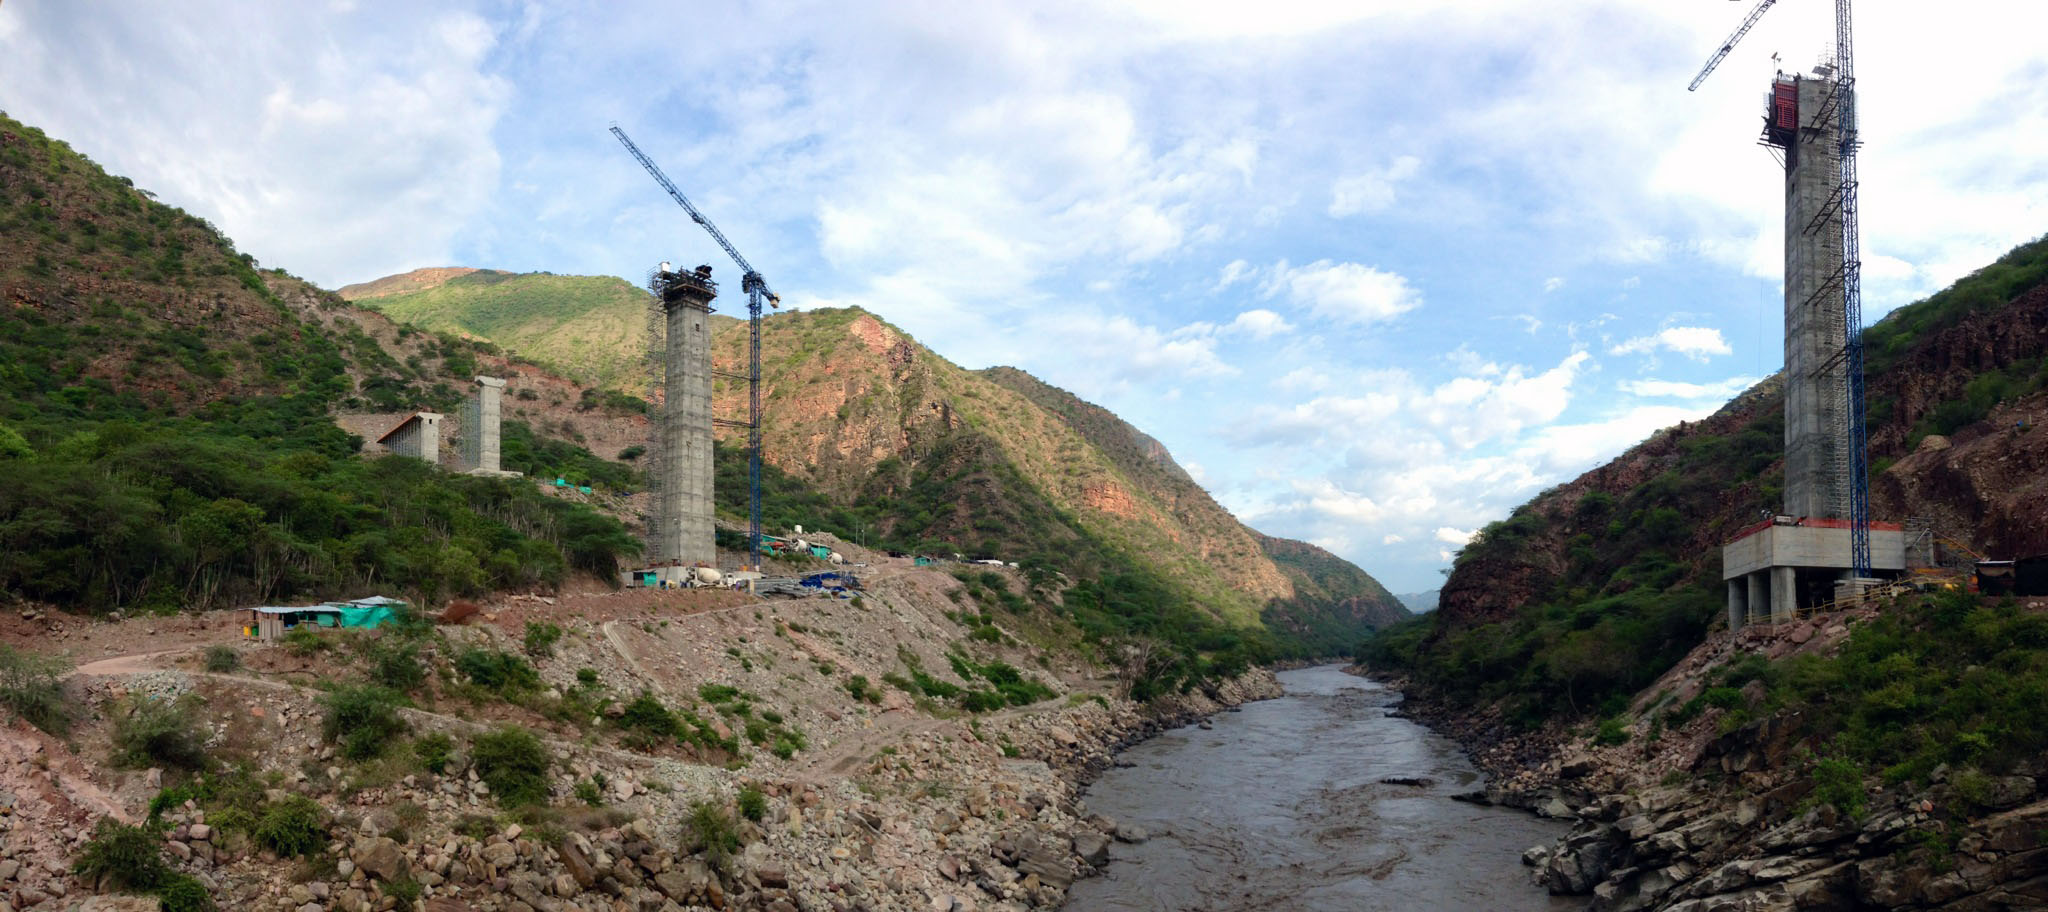 4 pilas para puente sobre rio Sogamoso, Colombia. 2 pilas sección recta de 4.02 x 2.50 mts, H=20 mts